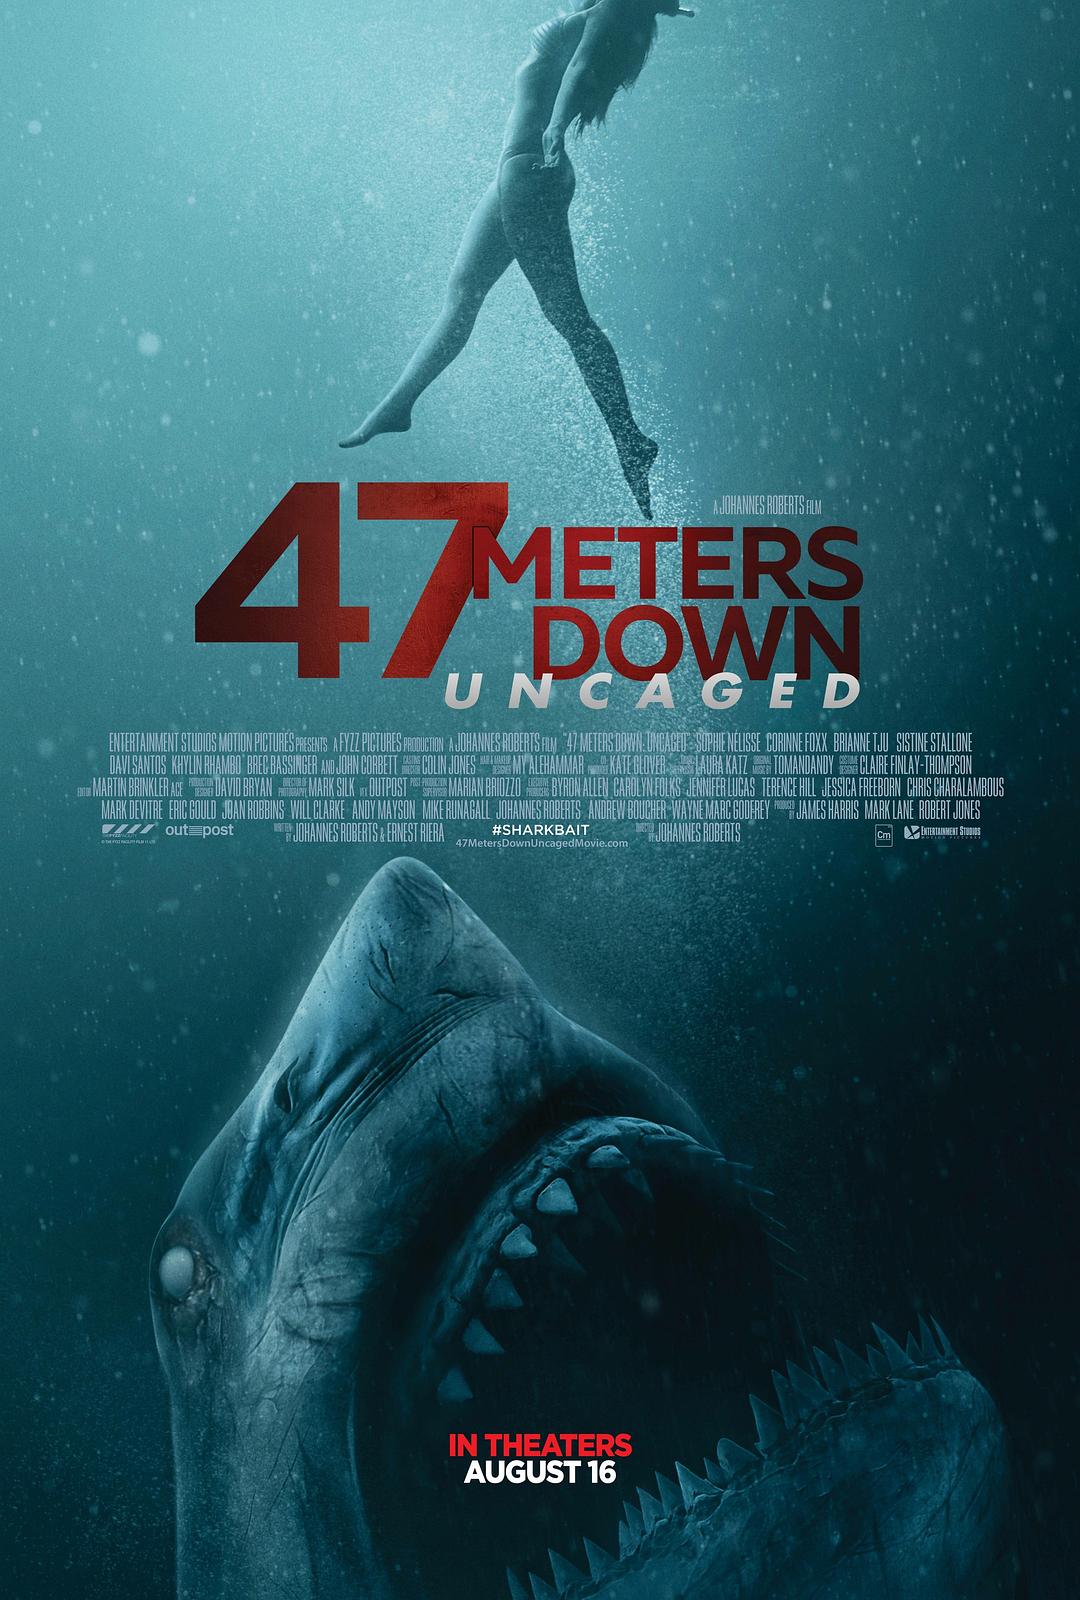 鲨海逃生 47.Meters.Down.Uncaged.2019.1080p.BluRay.REMUX.AVC.DTS-HD.MA.5.1-FGT 18.99GB-1.png